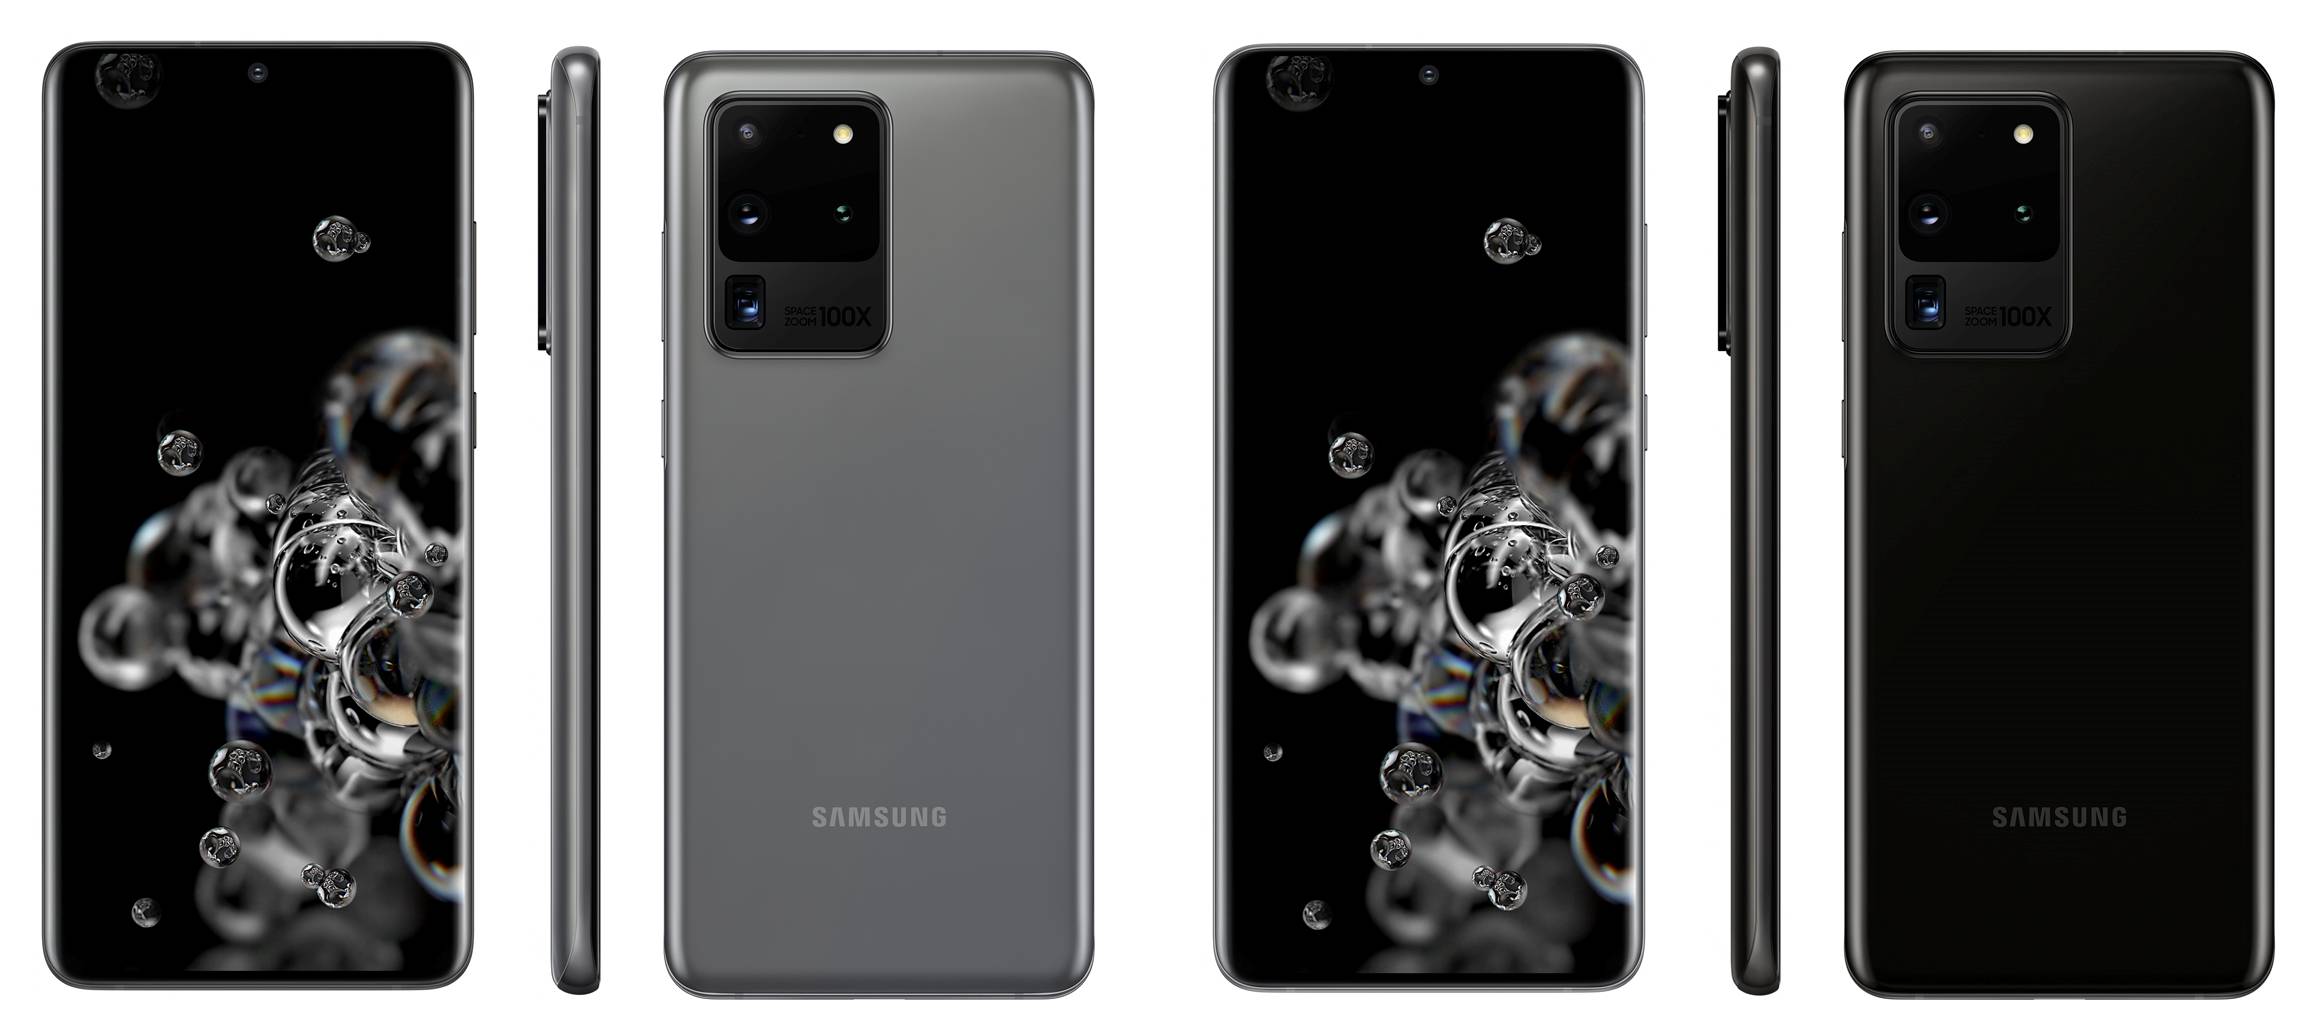 Imágenes de prensa oficiales del Samsung GALAXY S20 Ultra